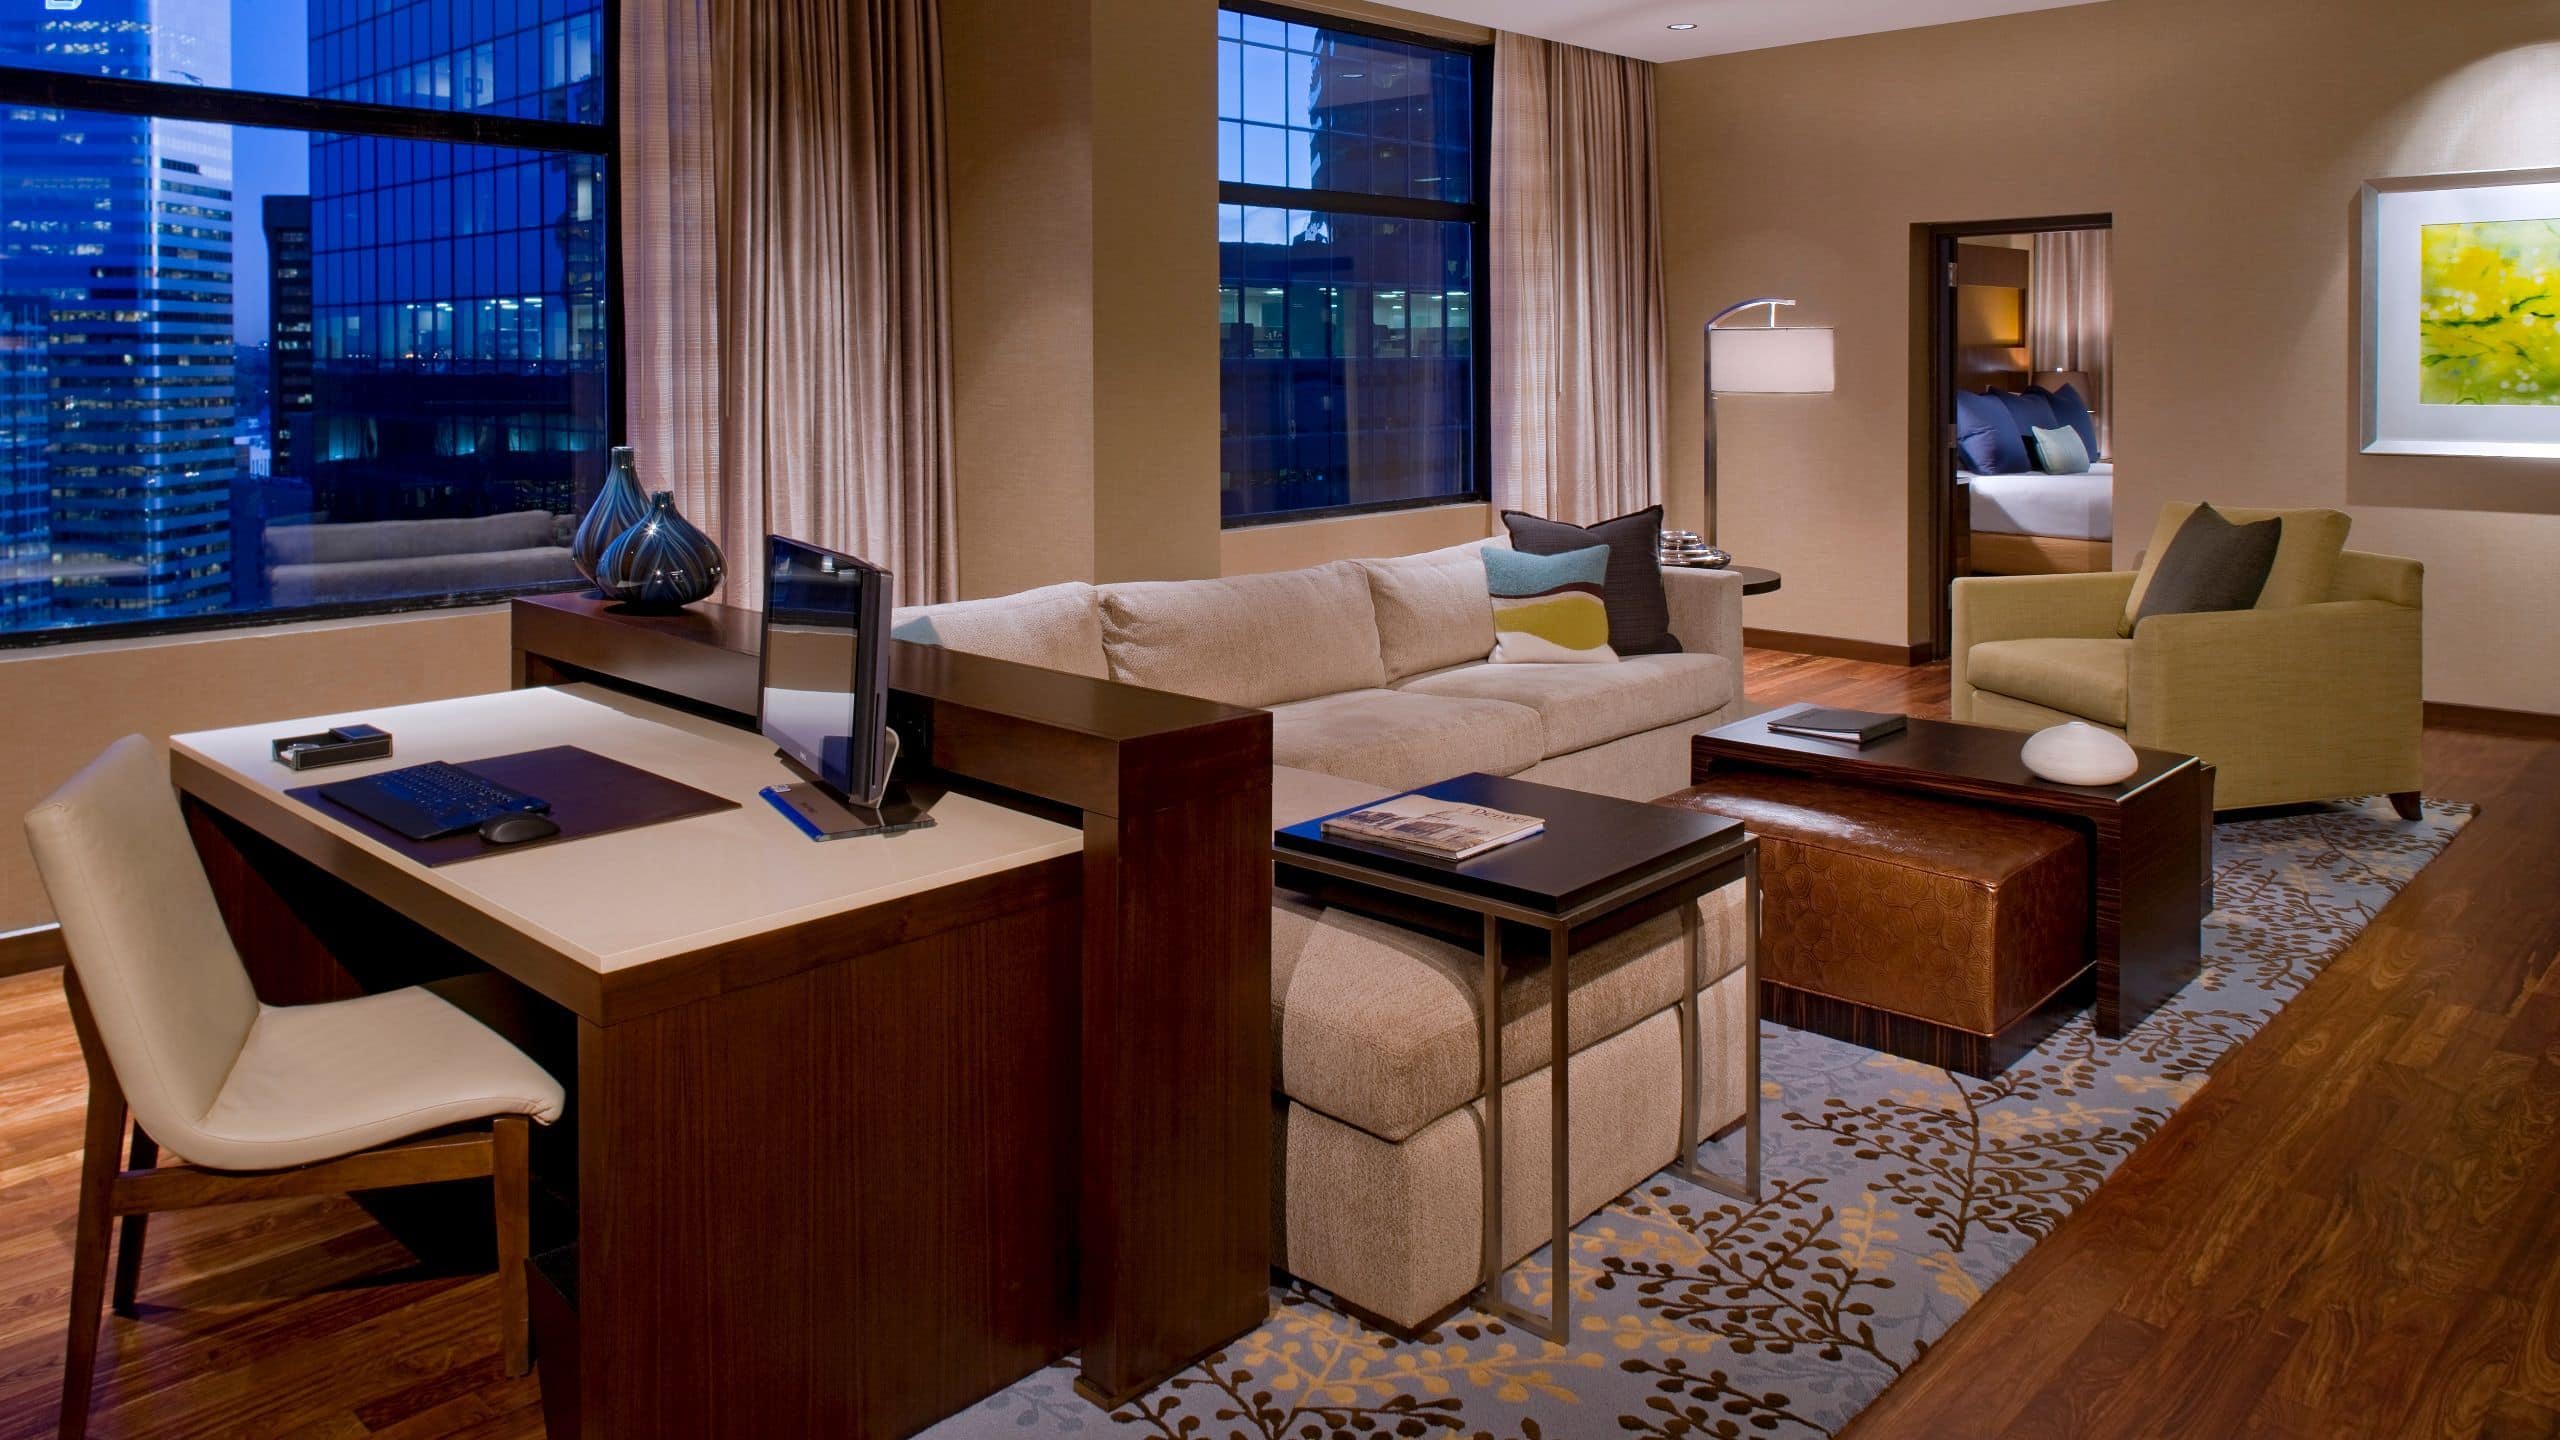 Presidential suite at Grand Hyatt Denver